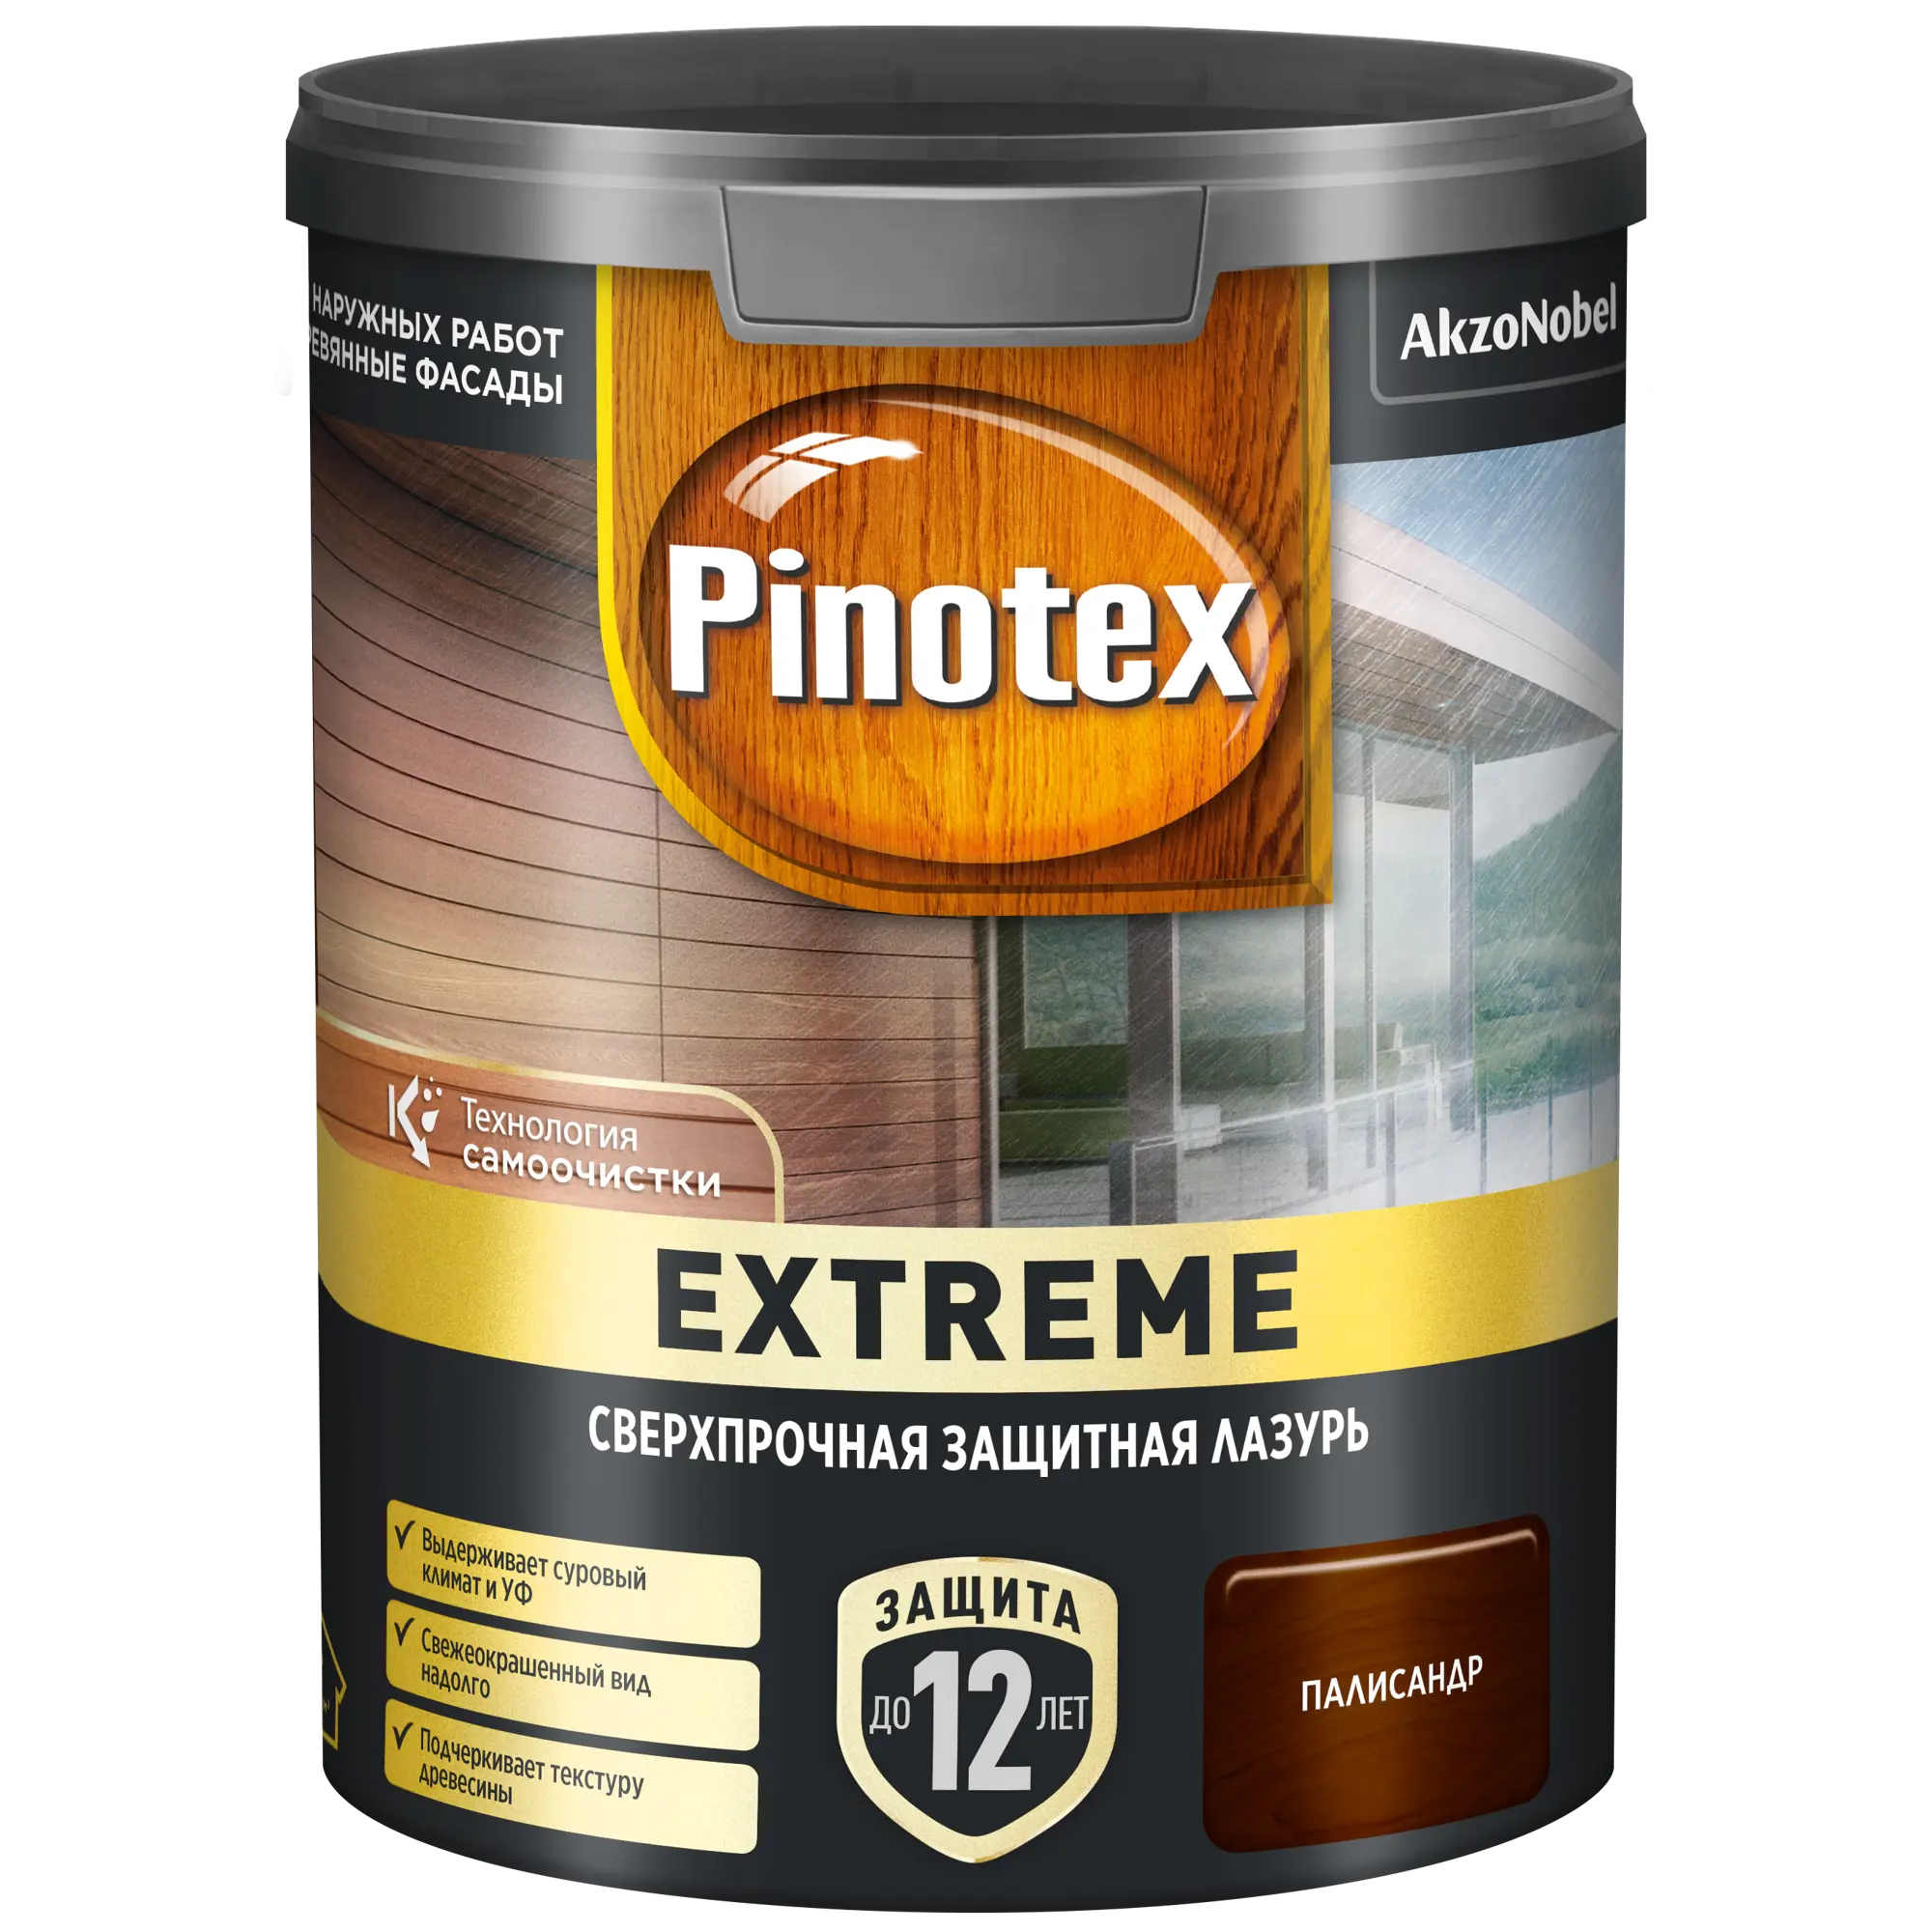 Лазурь для дерева Pinotex Extreme палисандр, 0,9 л акриловый антисептик для дерева v33 extreme climate полуглянец бес ный 117446